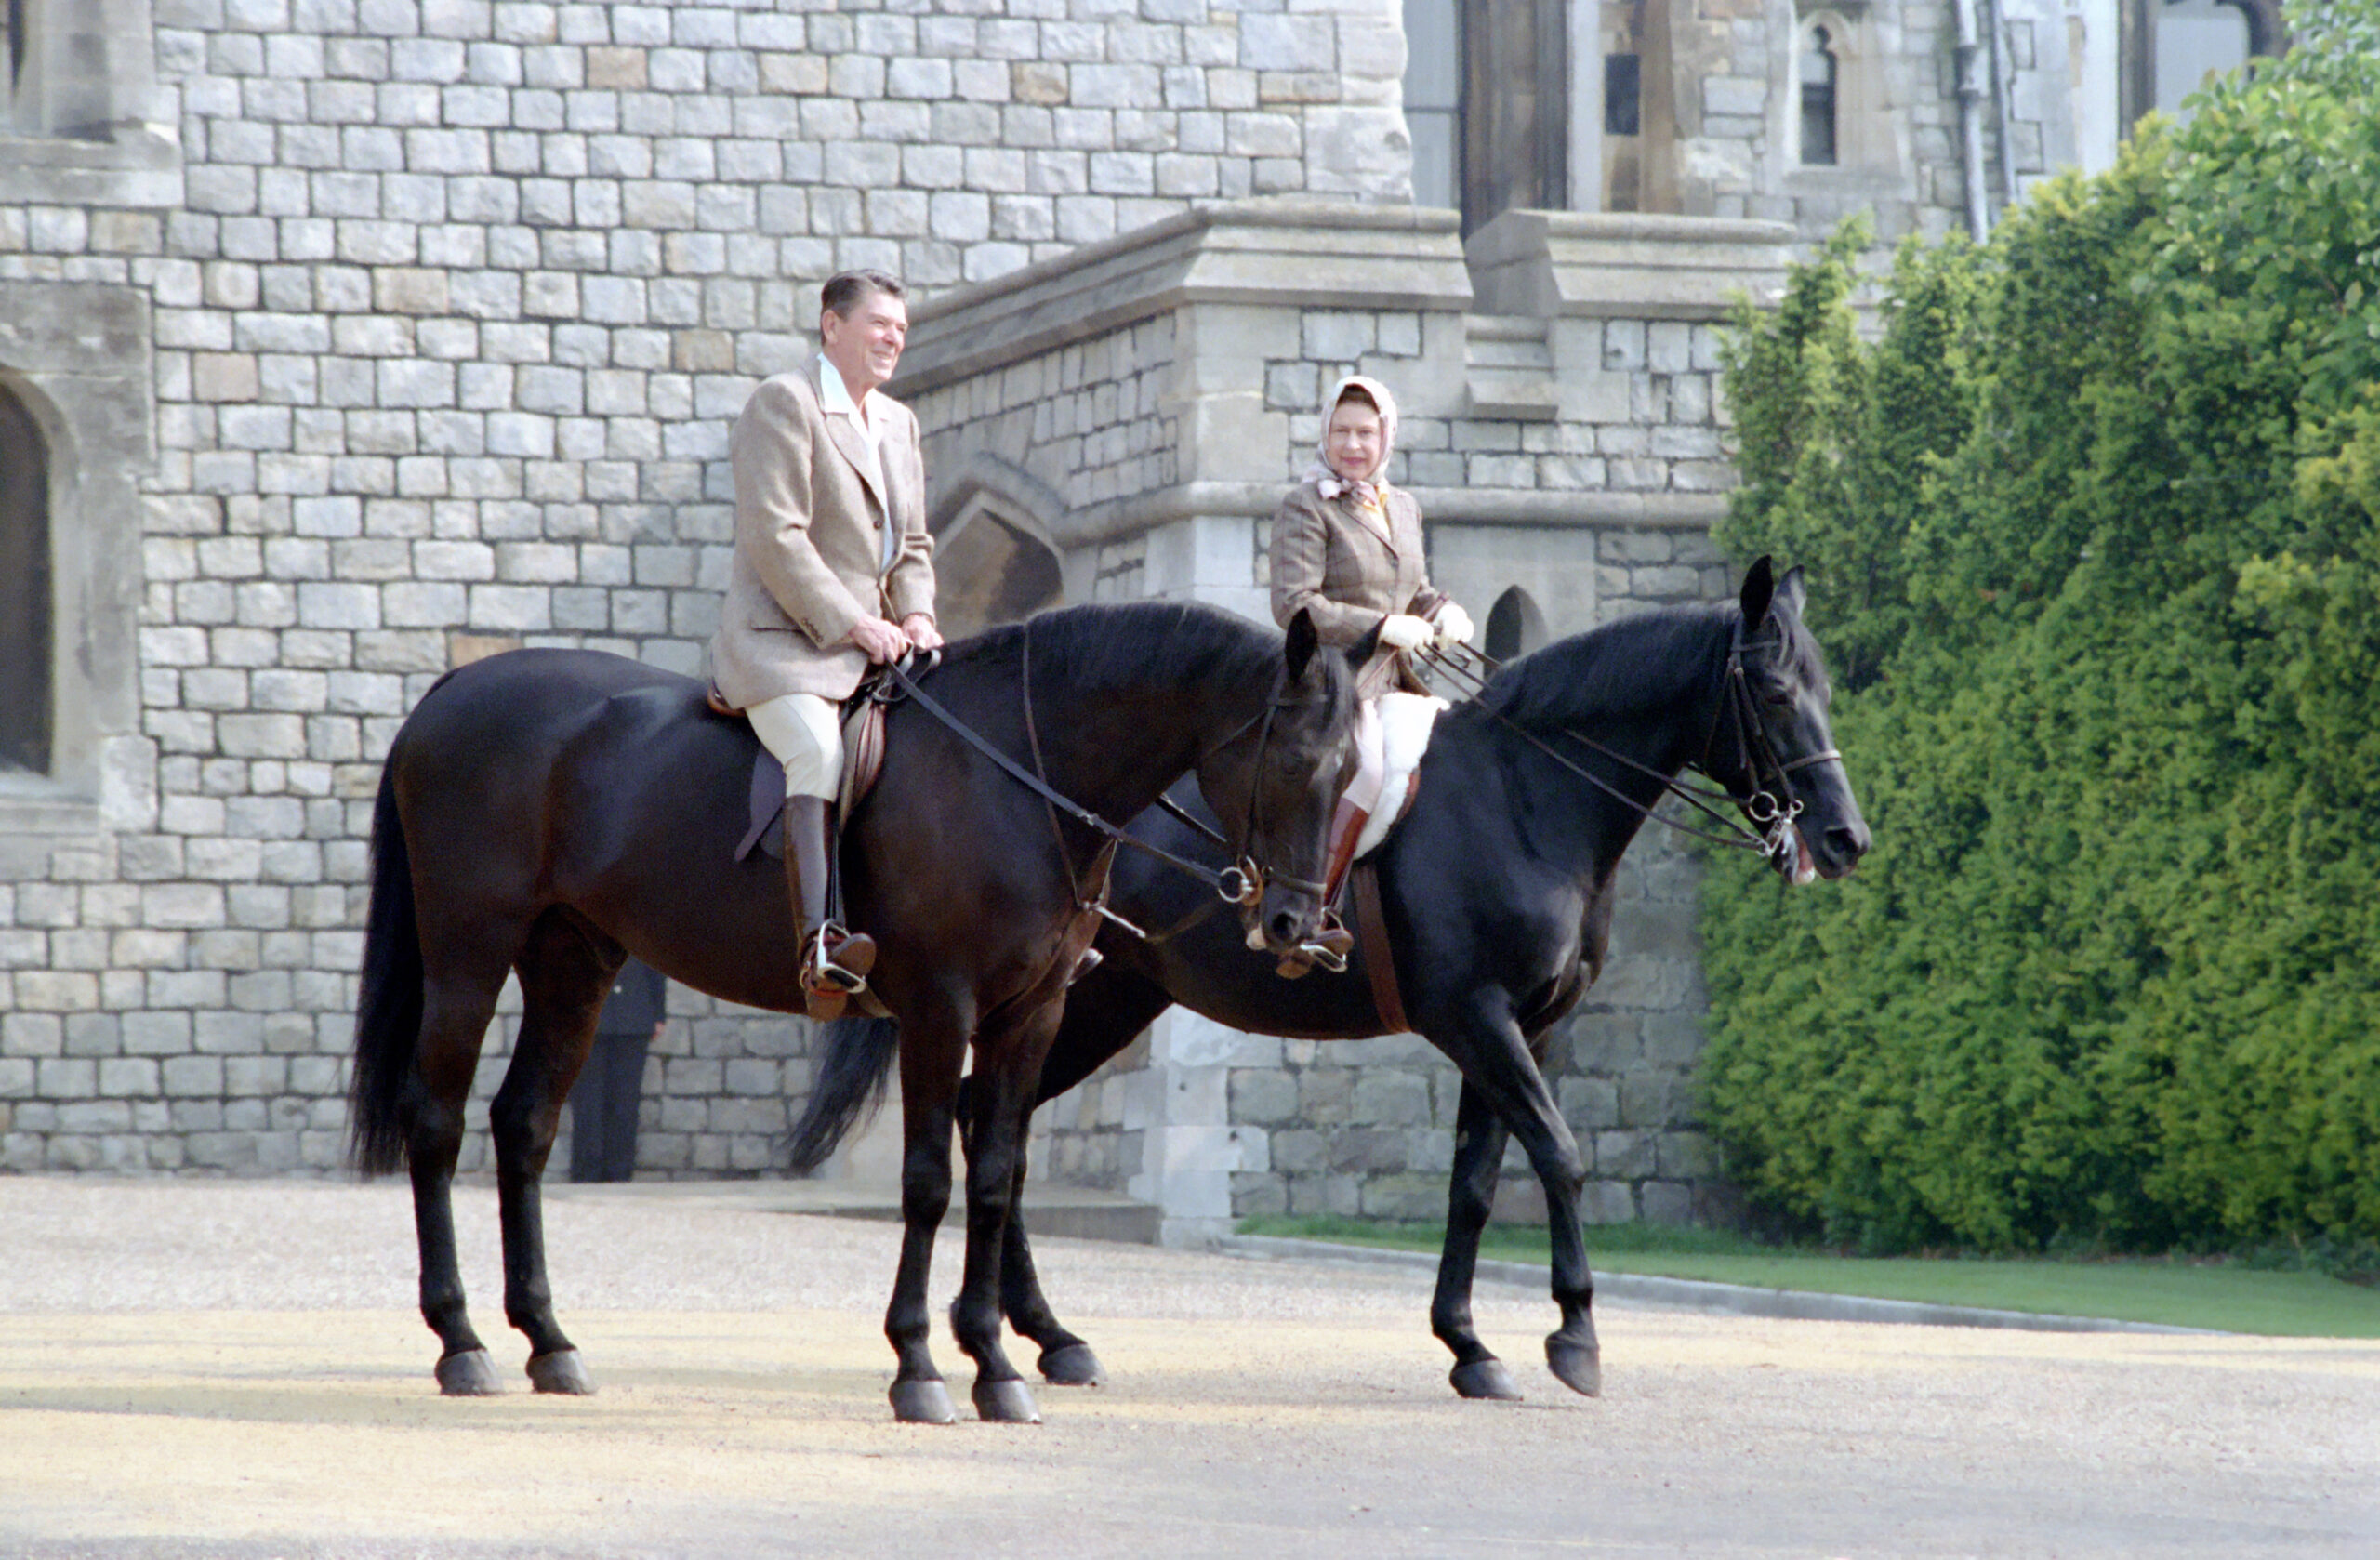 Reagan and Elizabeth on horses at Windsor - NAI: 75856837